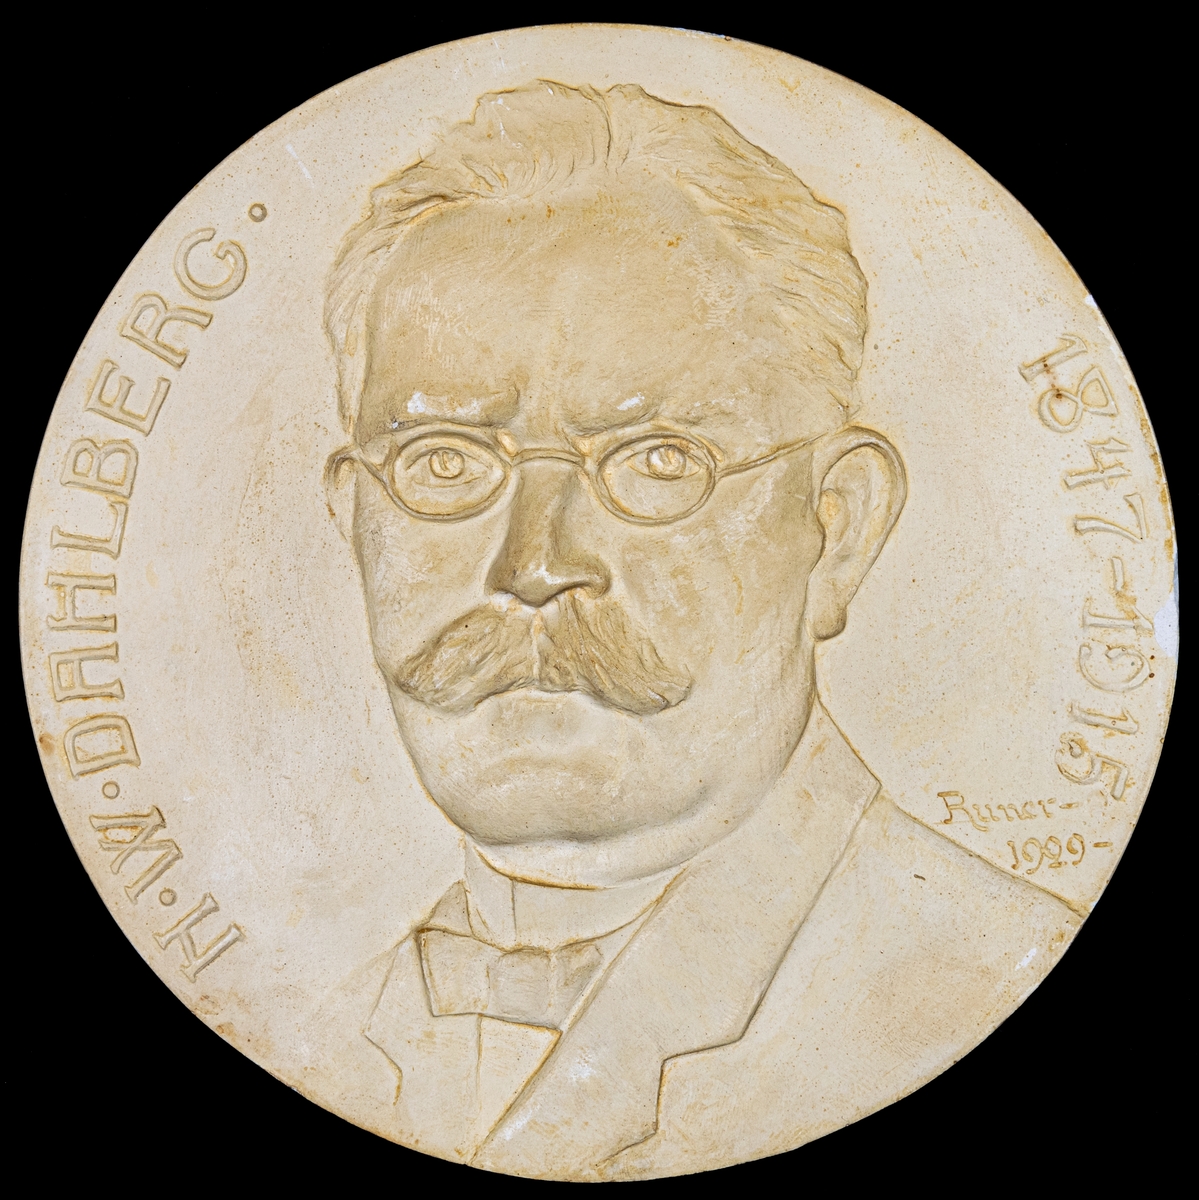 Porträttrelief föreställande N.W. Dahlberg (1847-1945).
Sign. John Runer 1929